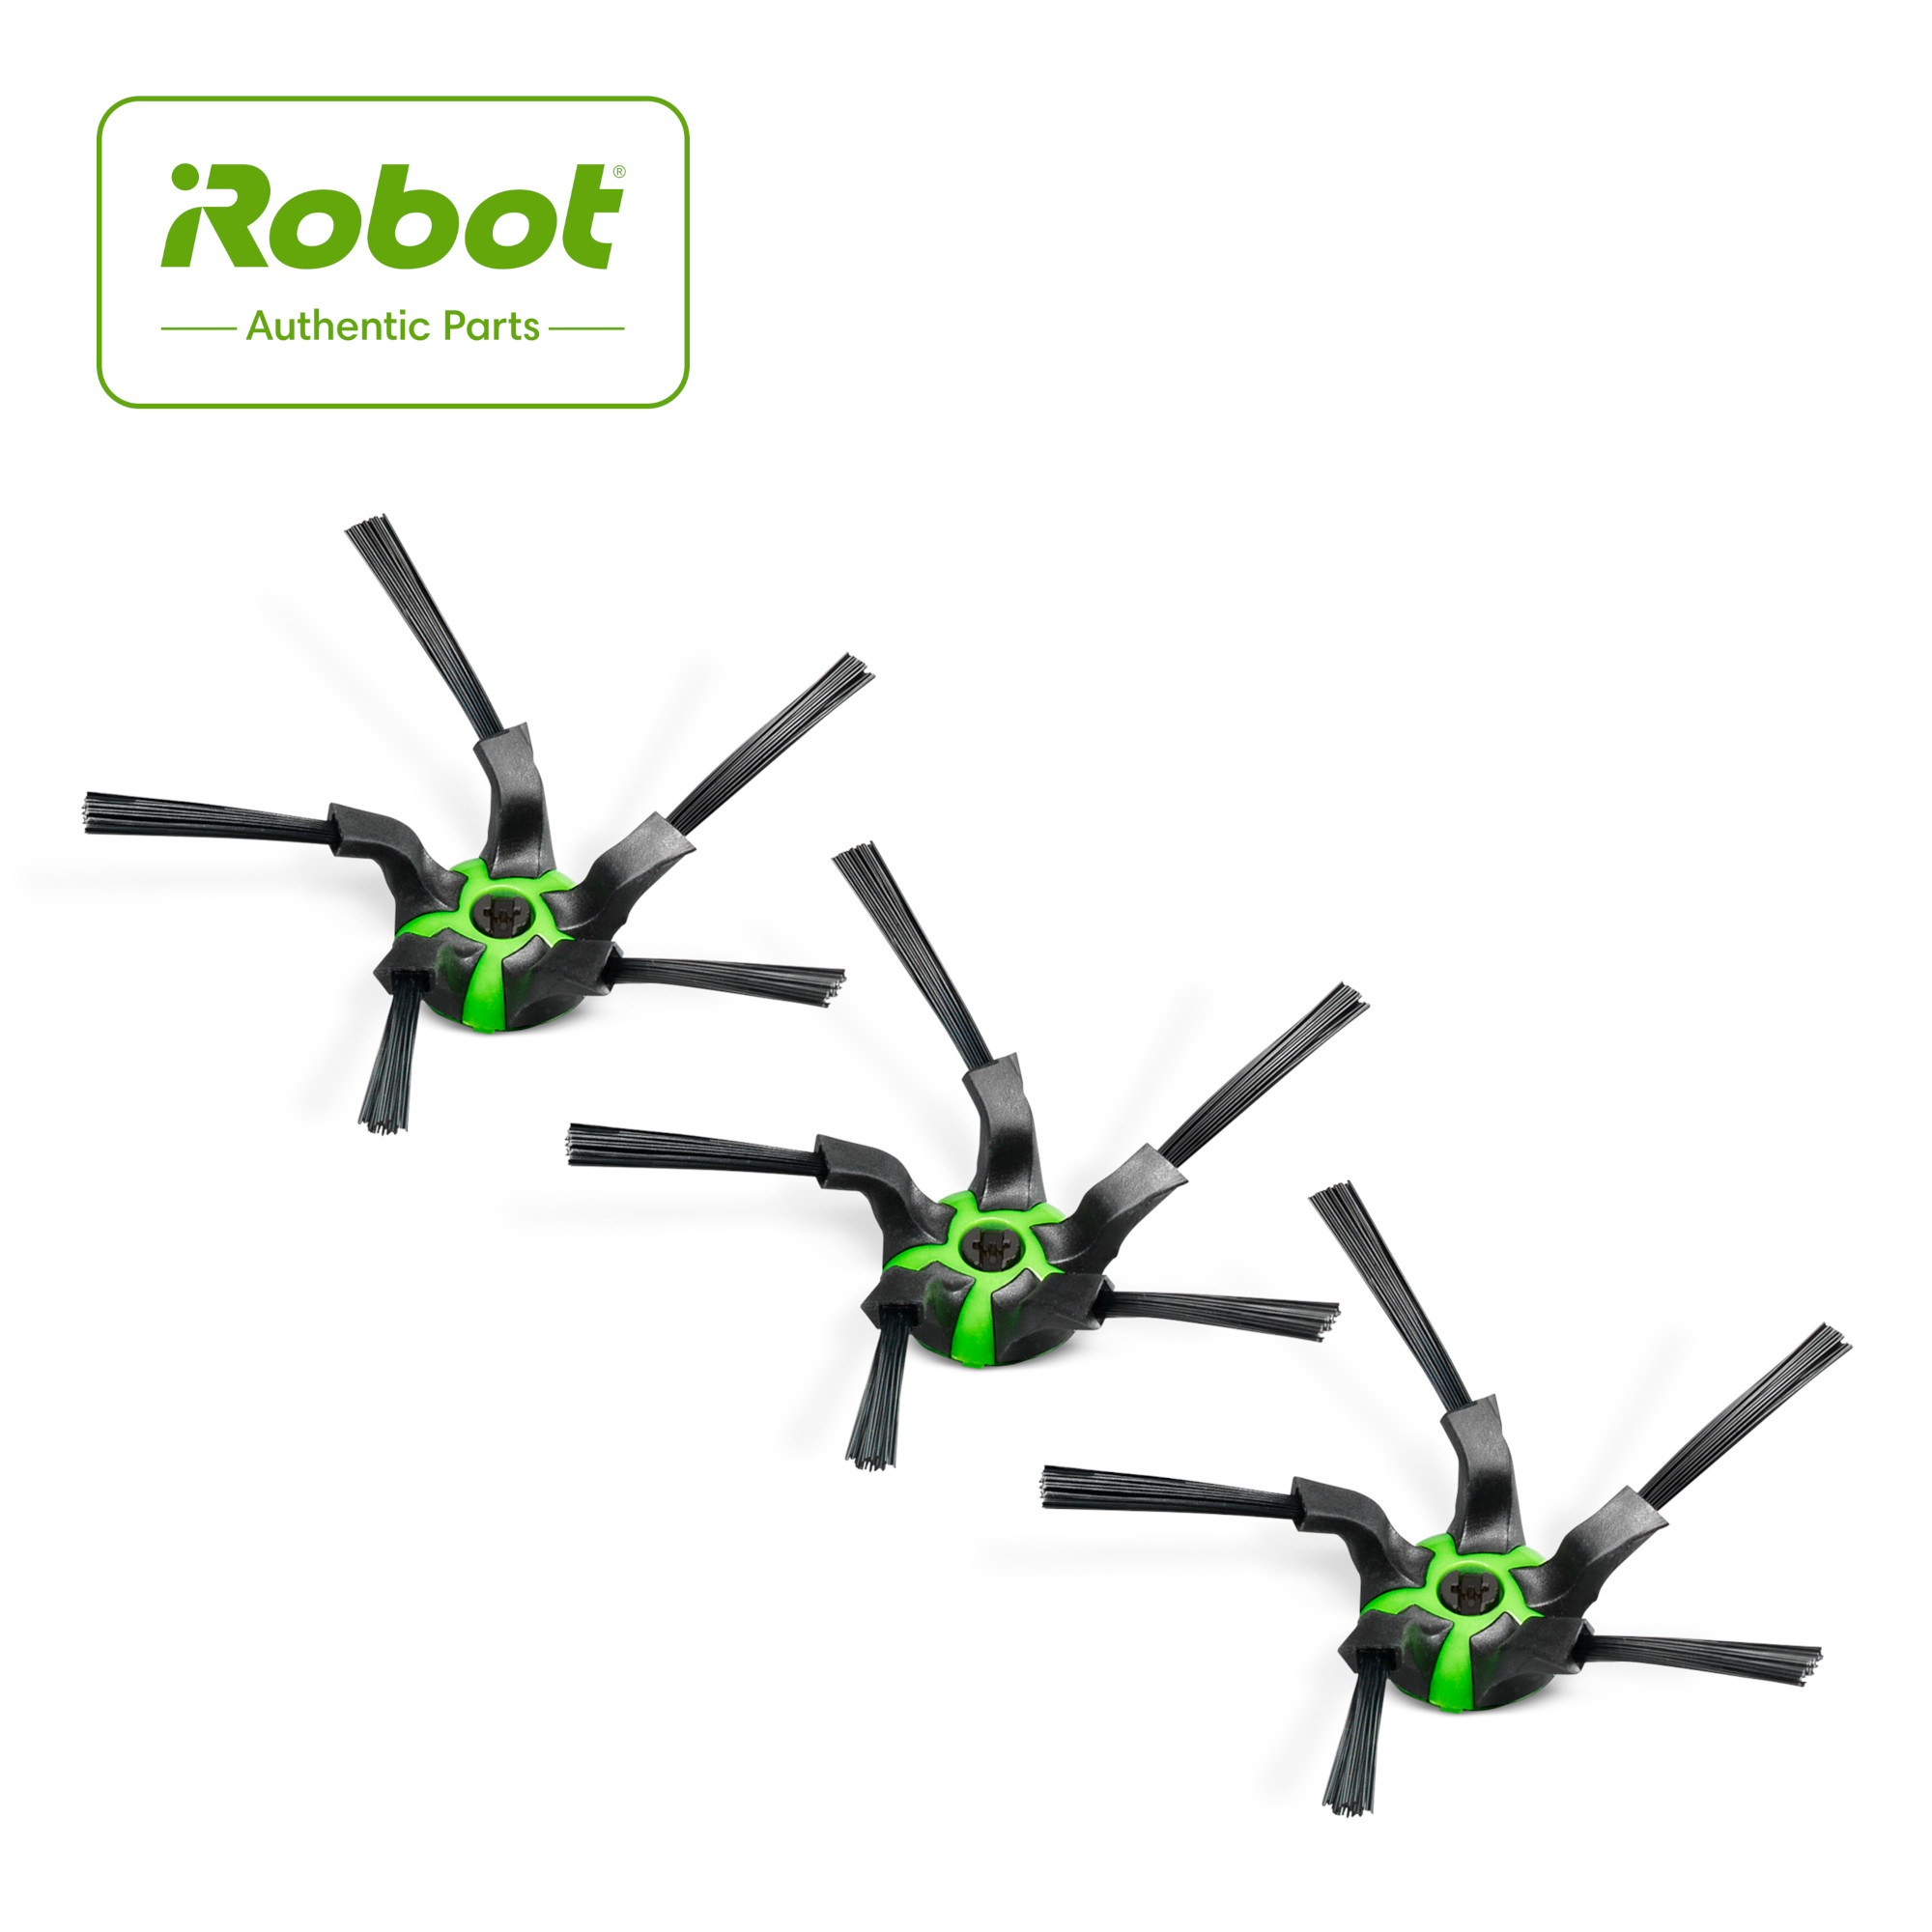 Brosses Latérale (6 pales) pour iRobot Roomba 'e', 'i' et 'j'  Série (Paquet de 3)